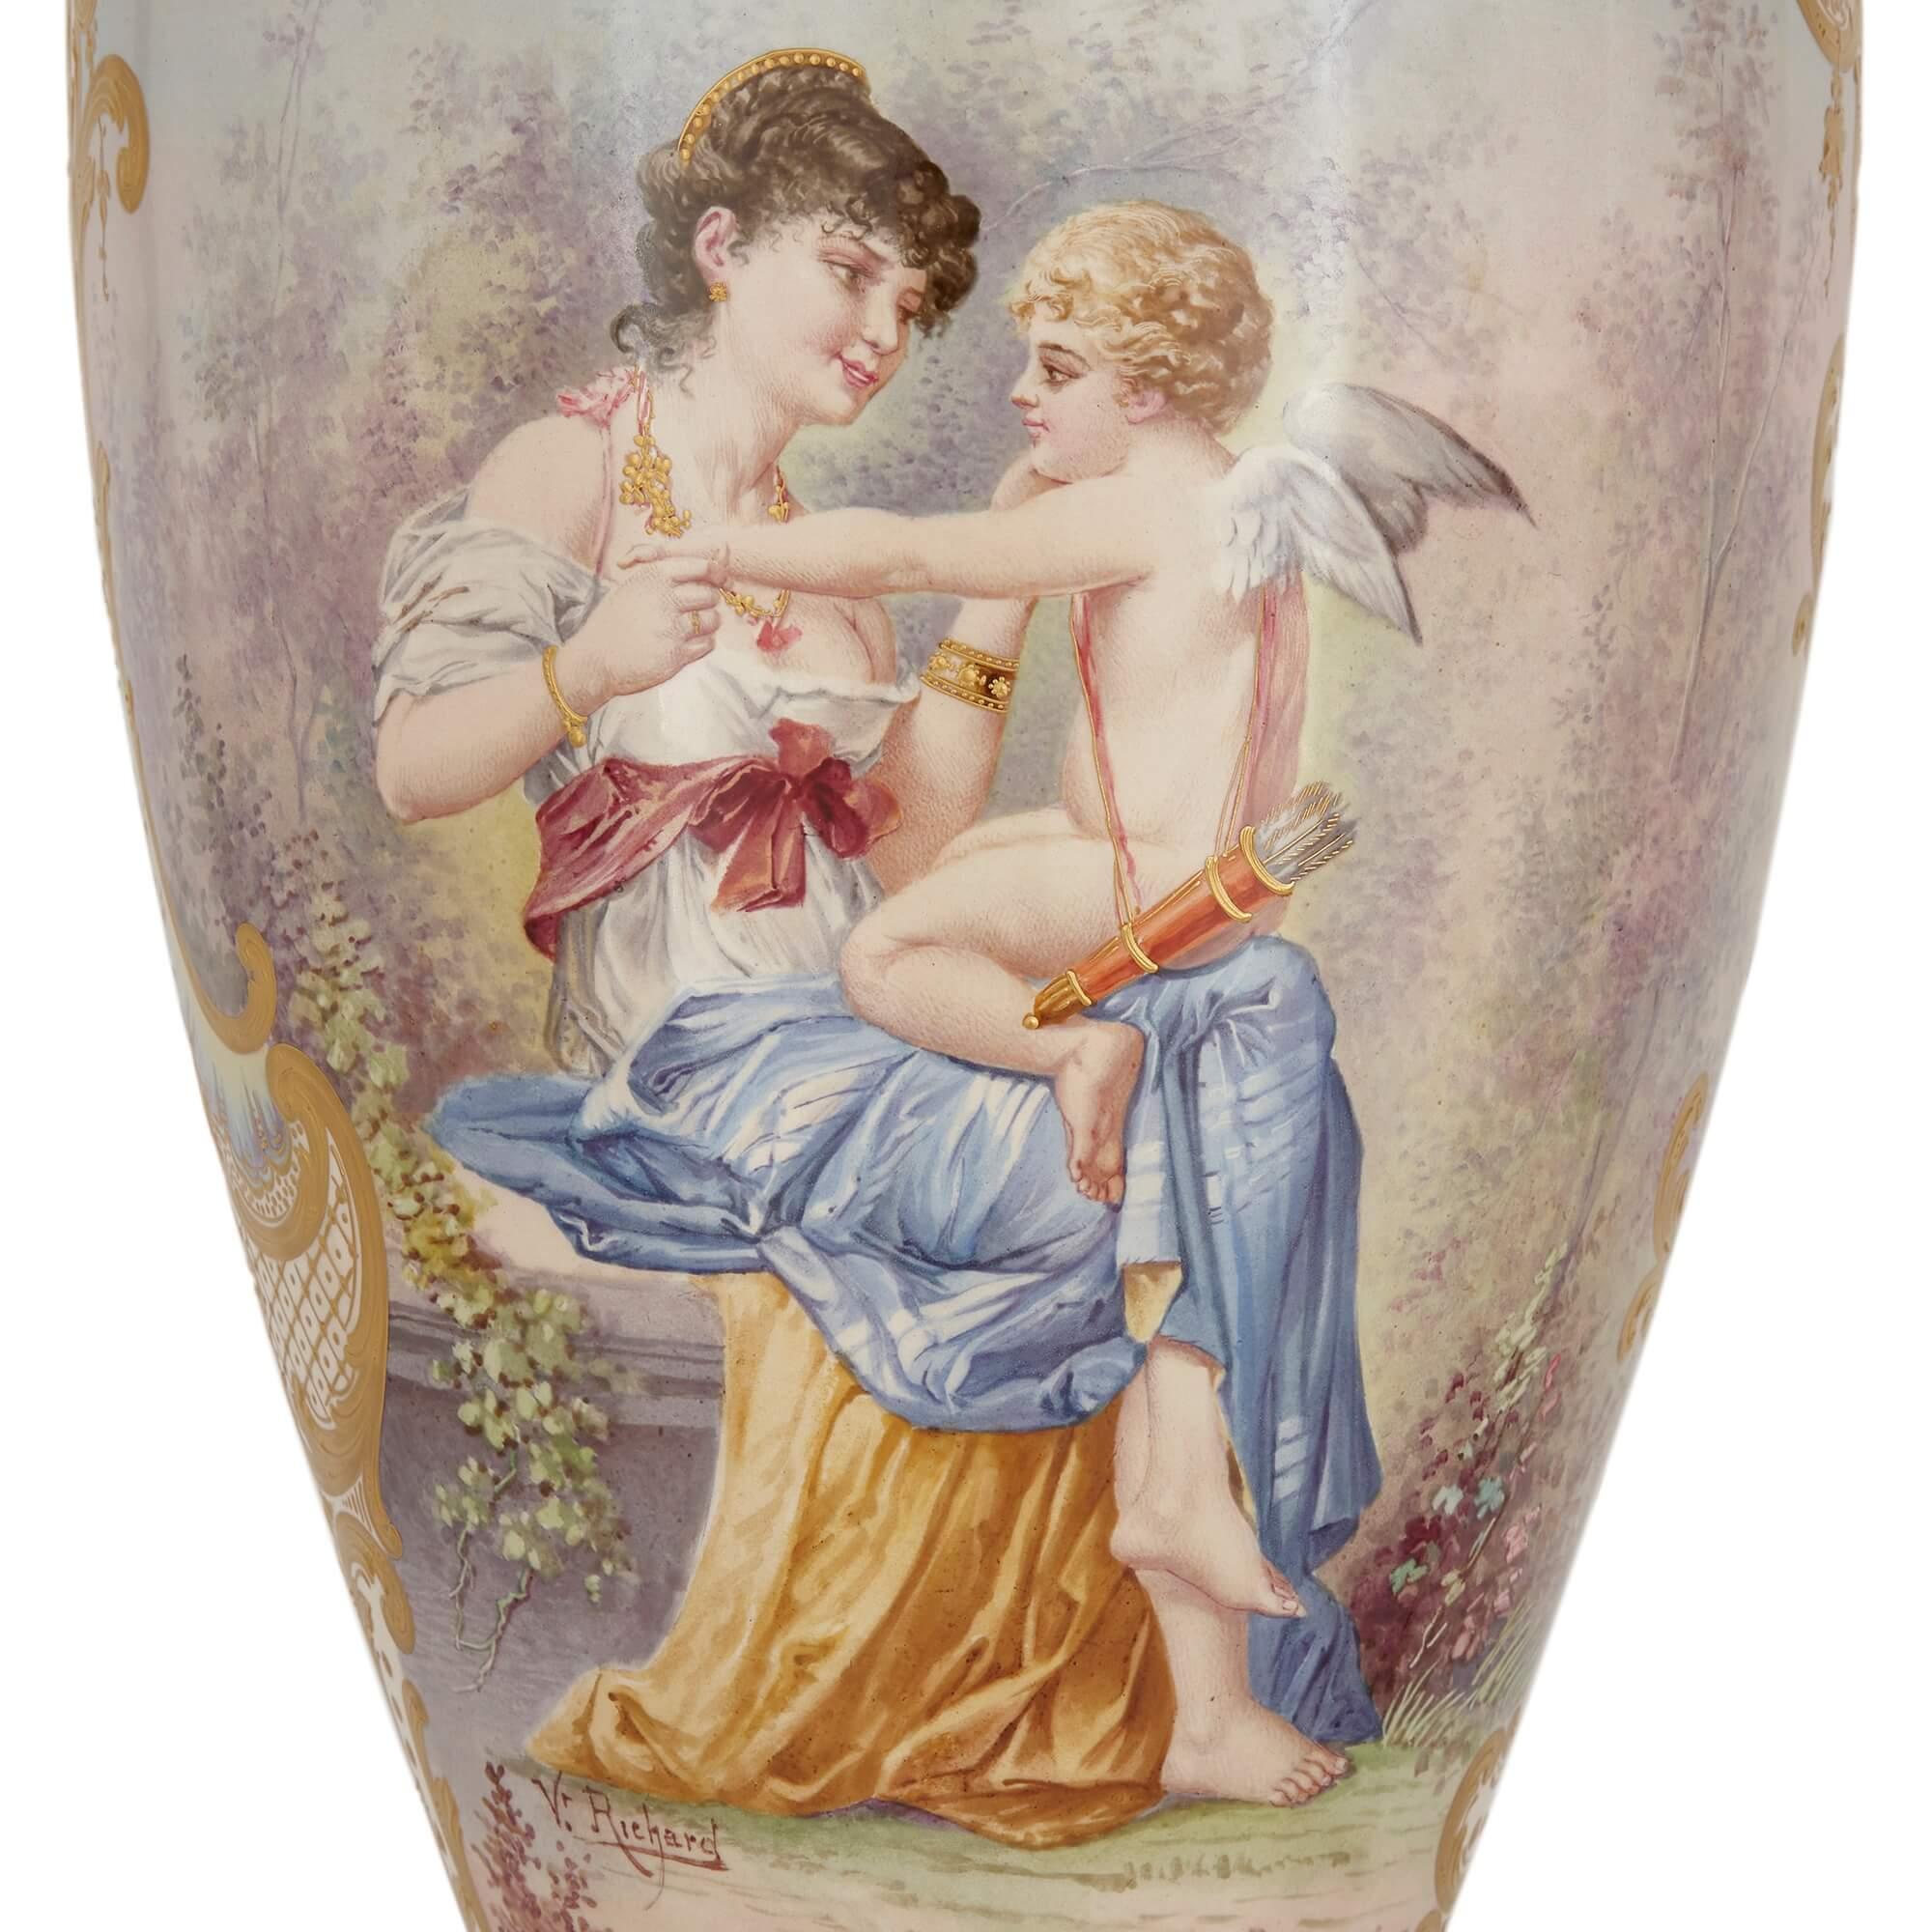 Paire de grands vases montés en porcelaine dorée de style Sèvres.
Français, Fin du XIXe siècle.
Hauteur 97 cm, diamètre 26 cm.

Ces magnifiques vases sont une paire de pièces de style Sèvres, à la manière de la célèbre manufacture de porcelaine